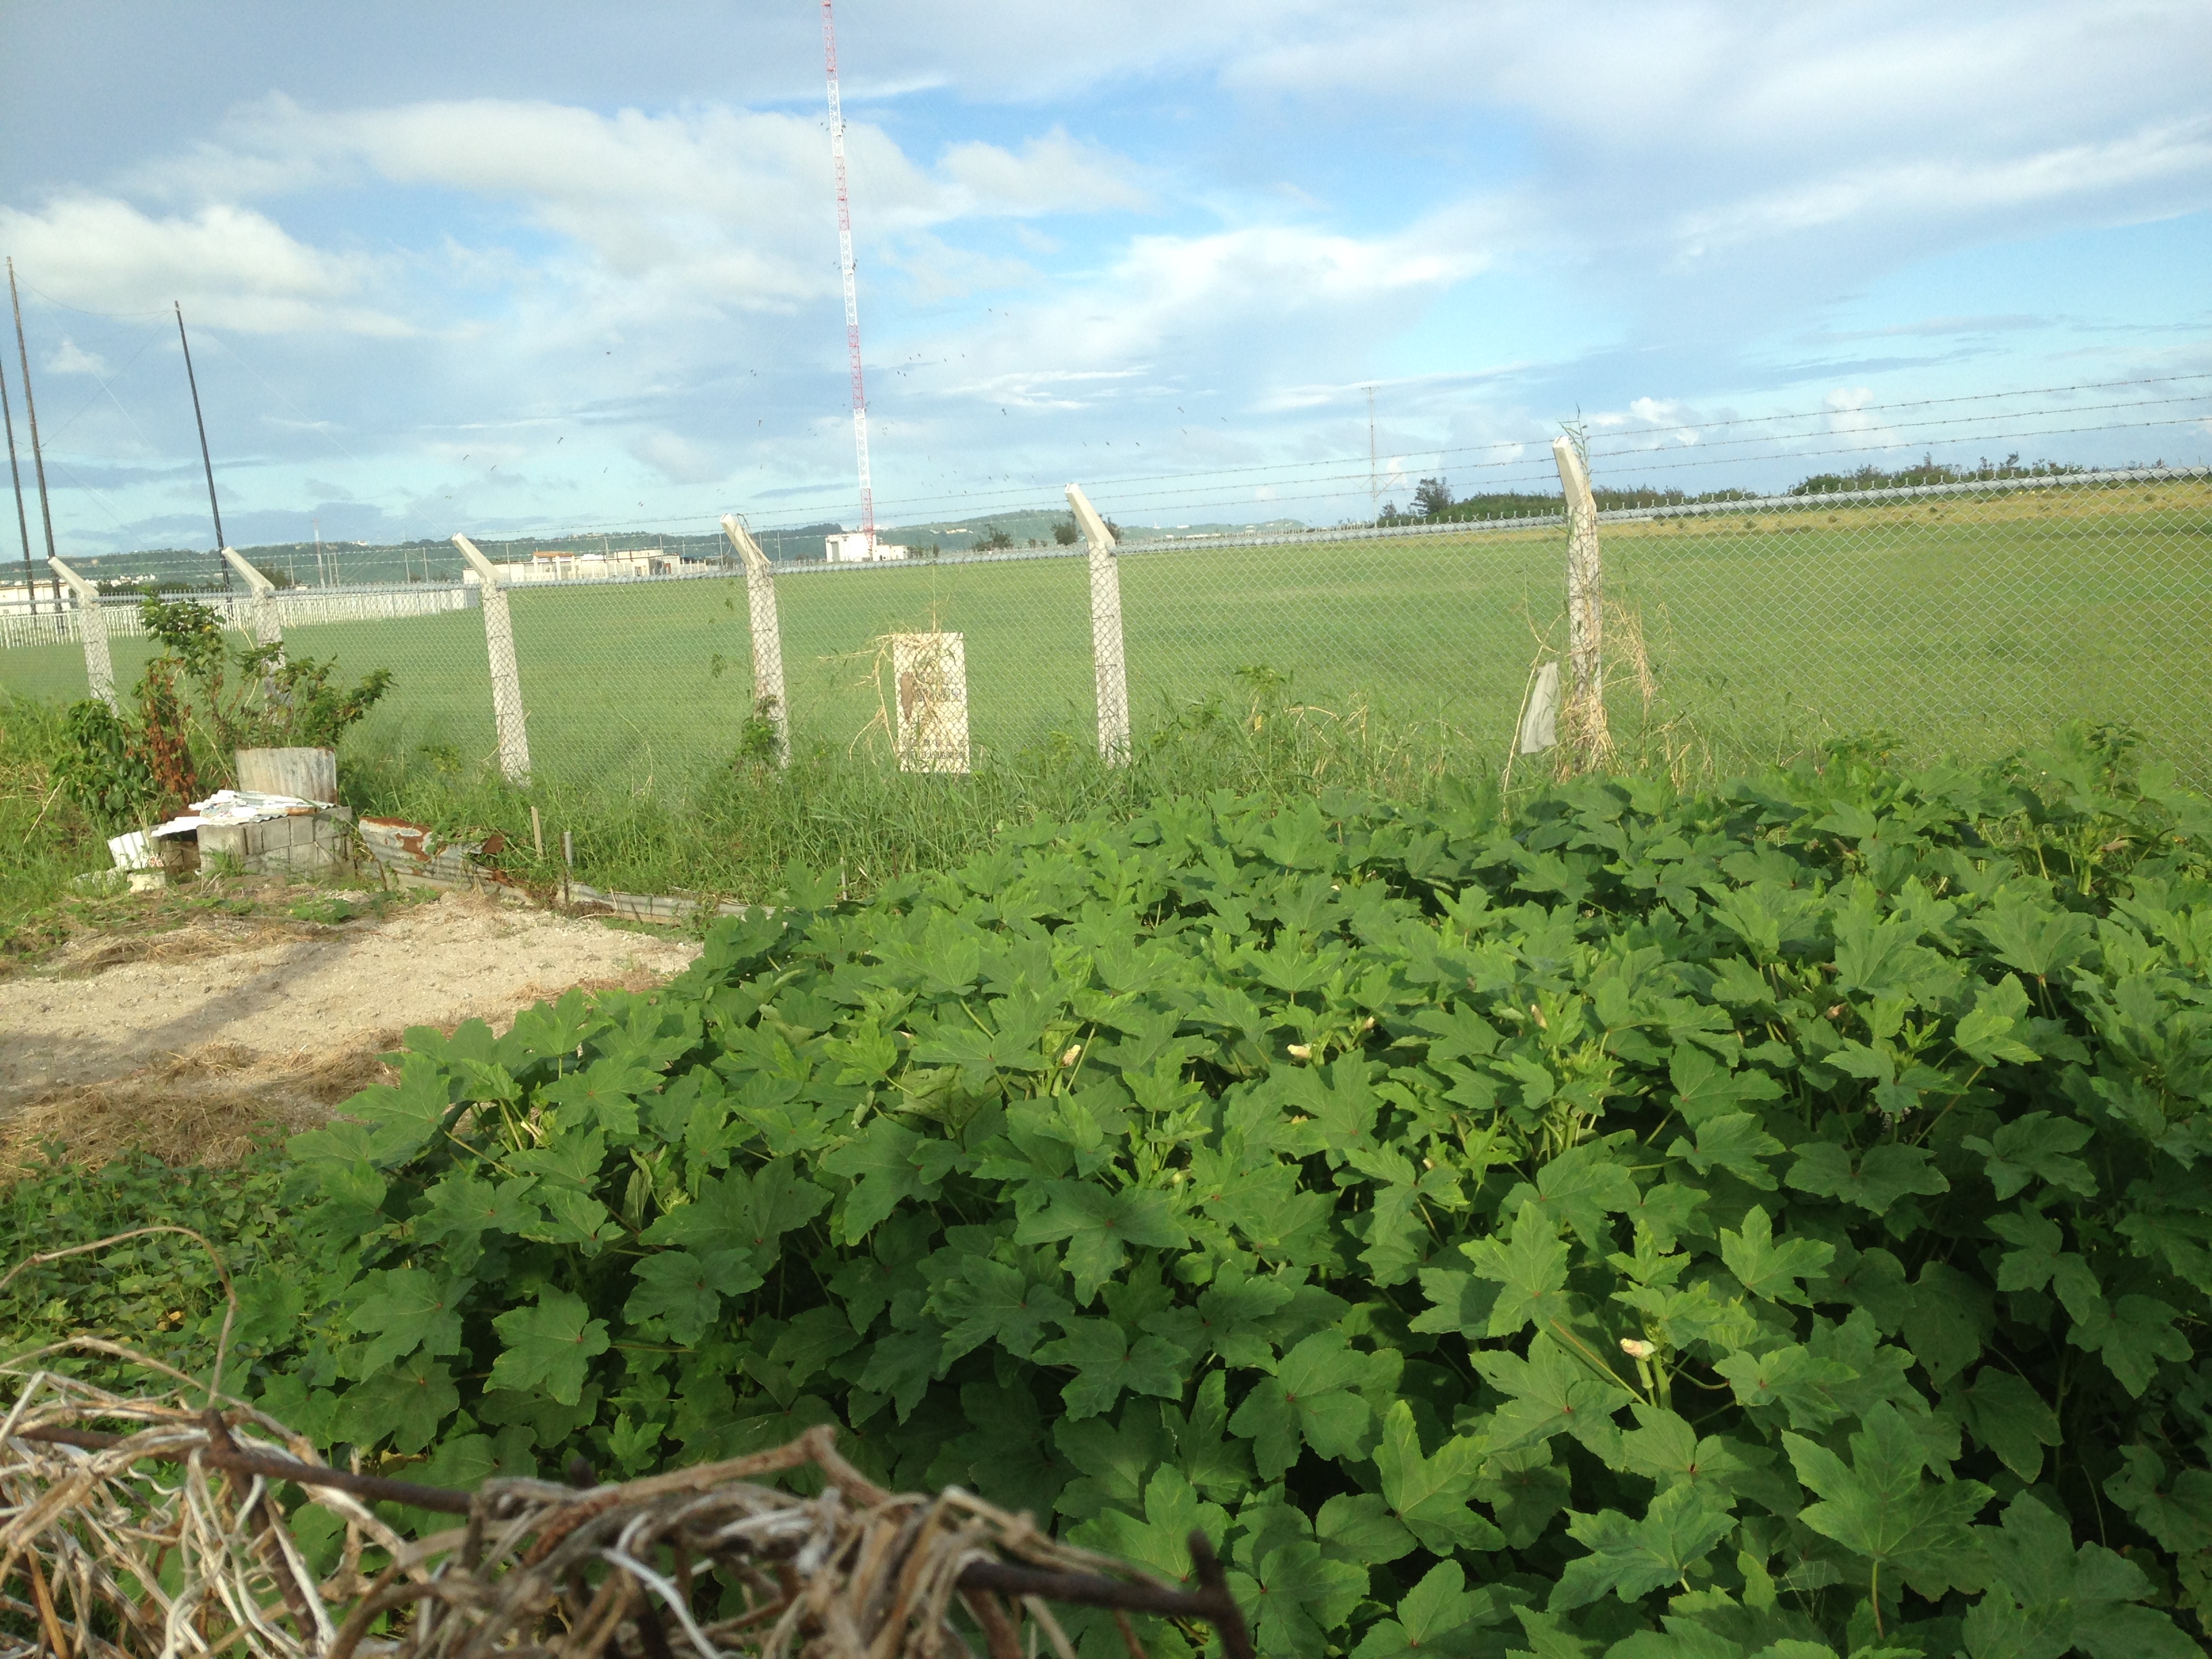 アメリカ軍施設を囲うフェンスのこちら側では、ギリギリまで畑が広がっている。
沖縄市泡瀬にて小濱撮影。